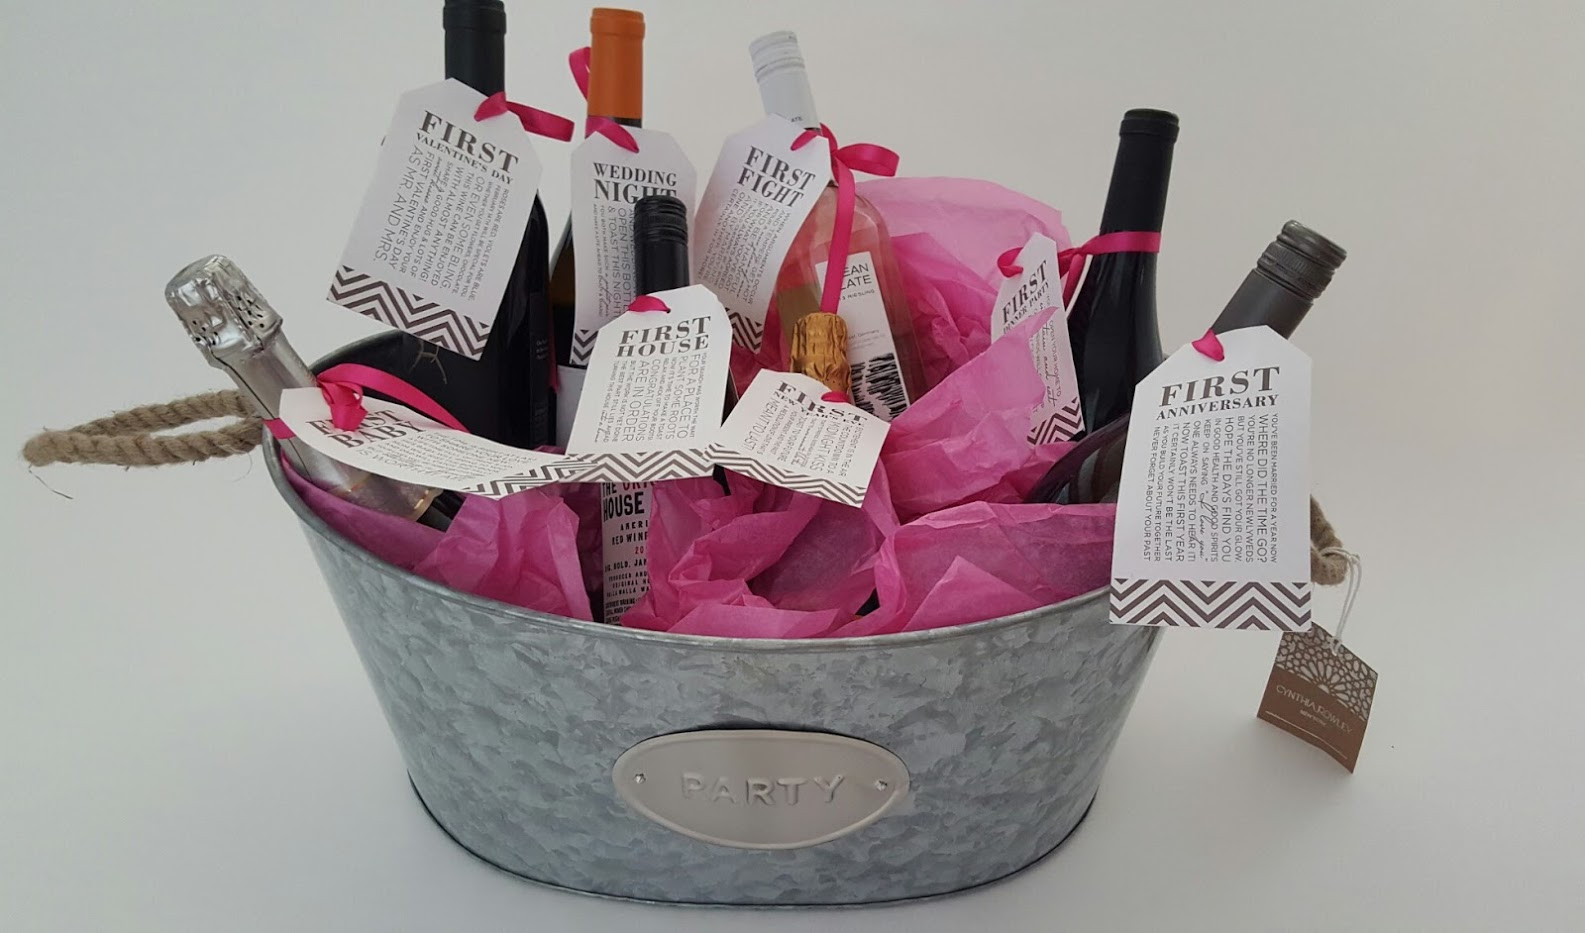 Bridal Shower Gift Basket Ideas For Bride
 Bridal Shower Gift DIY to Try A Basket of “Firsts” for